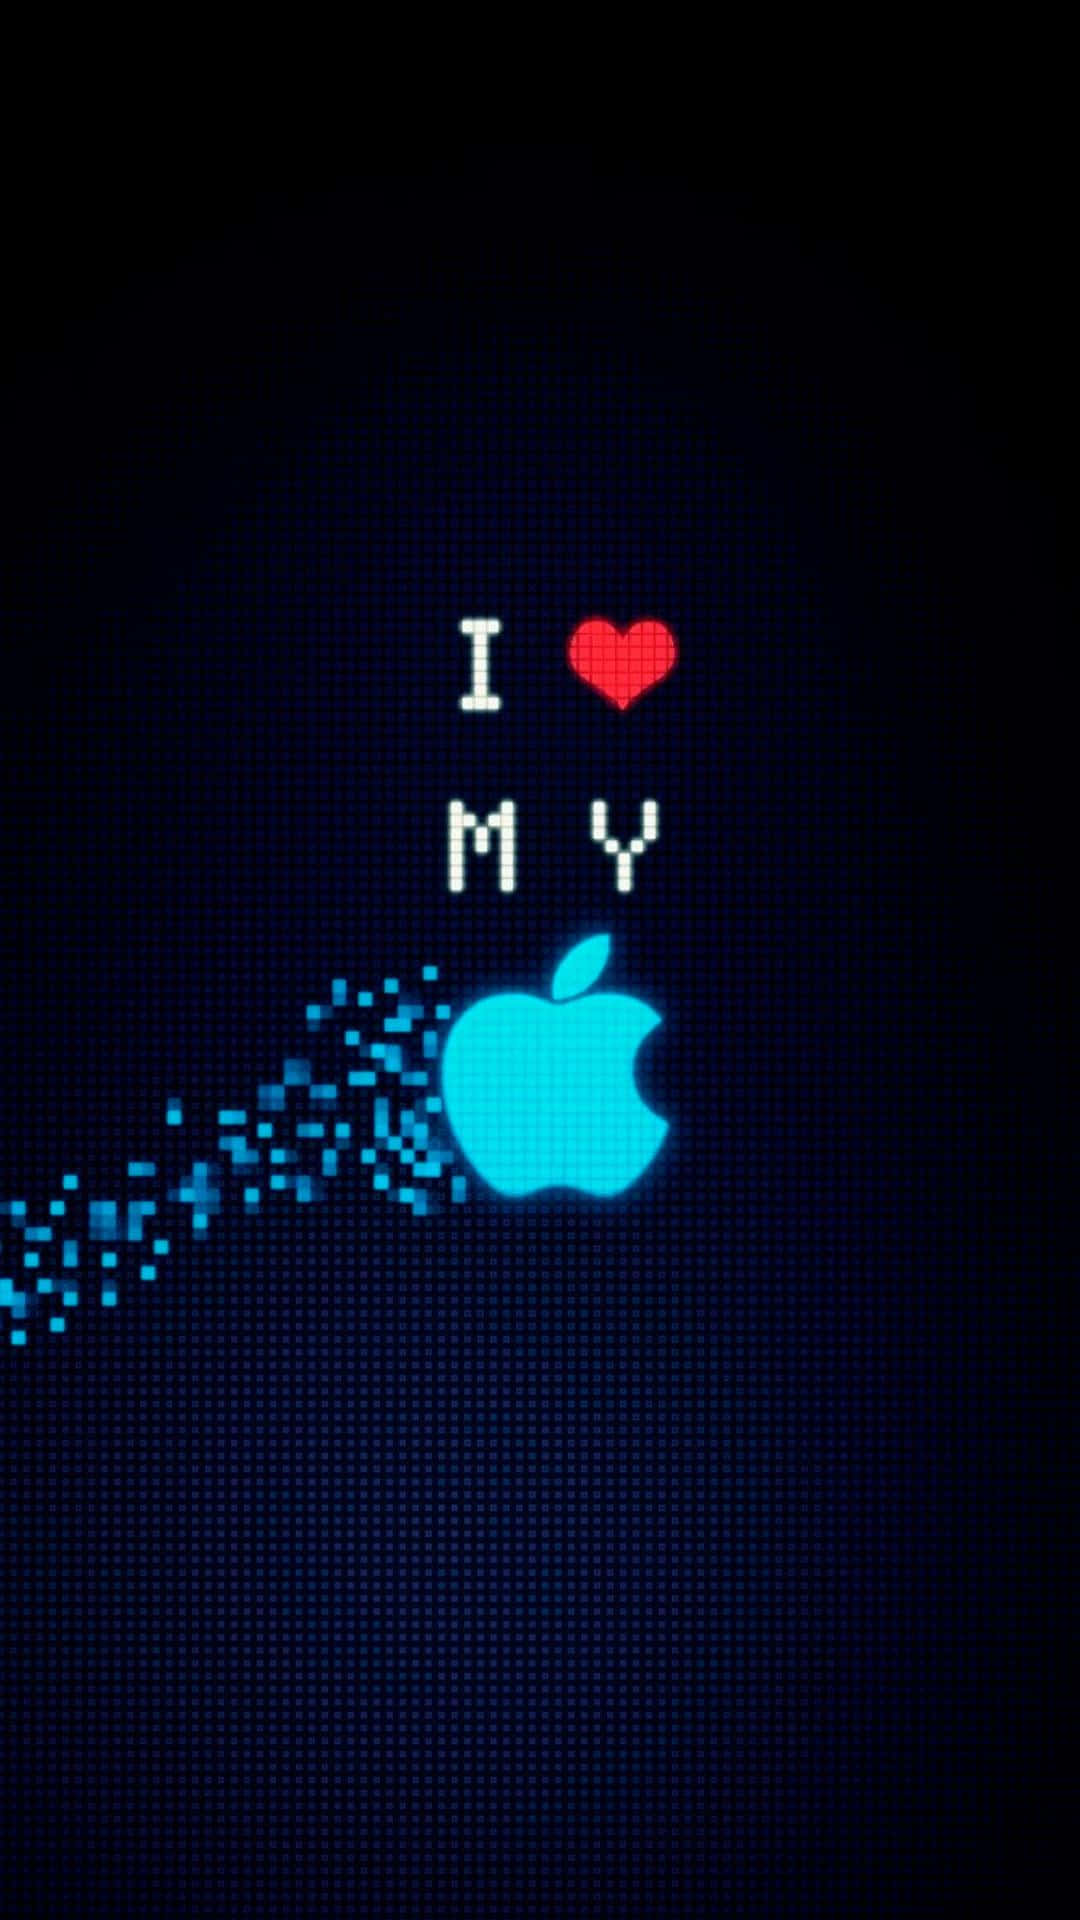 Dasikonische Apple-logo Auf Dem Iphone X Wallpaper